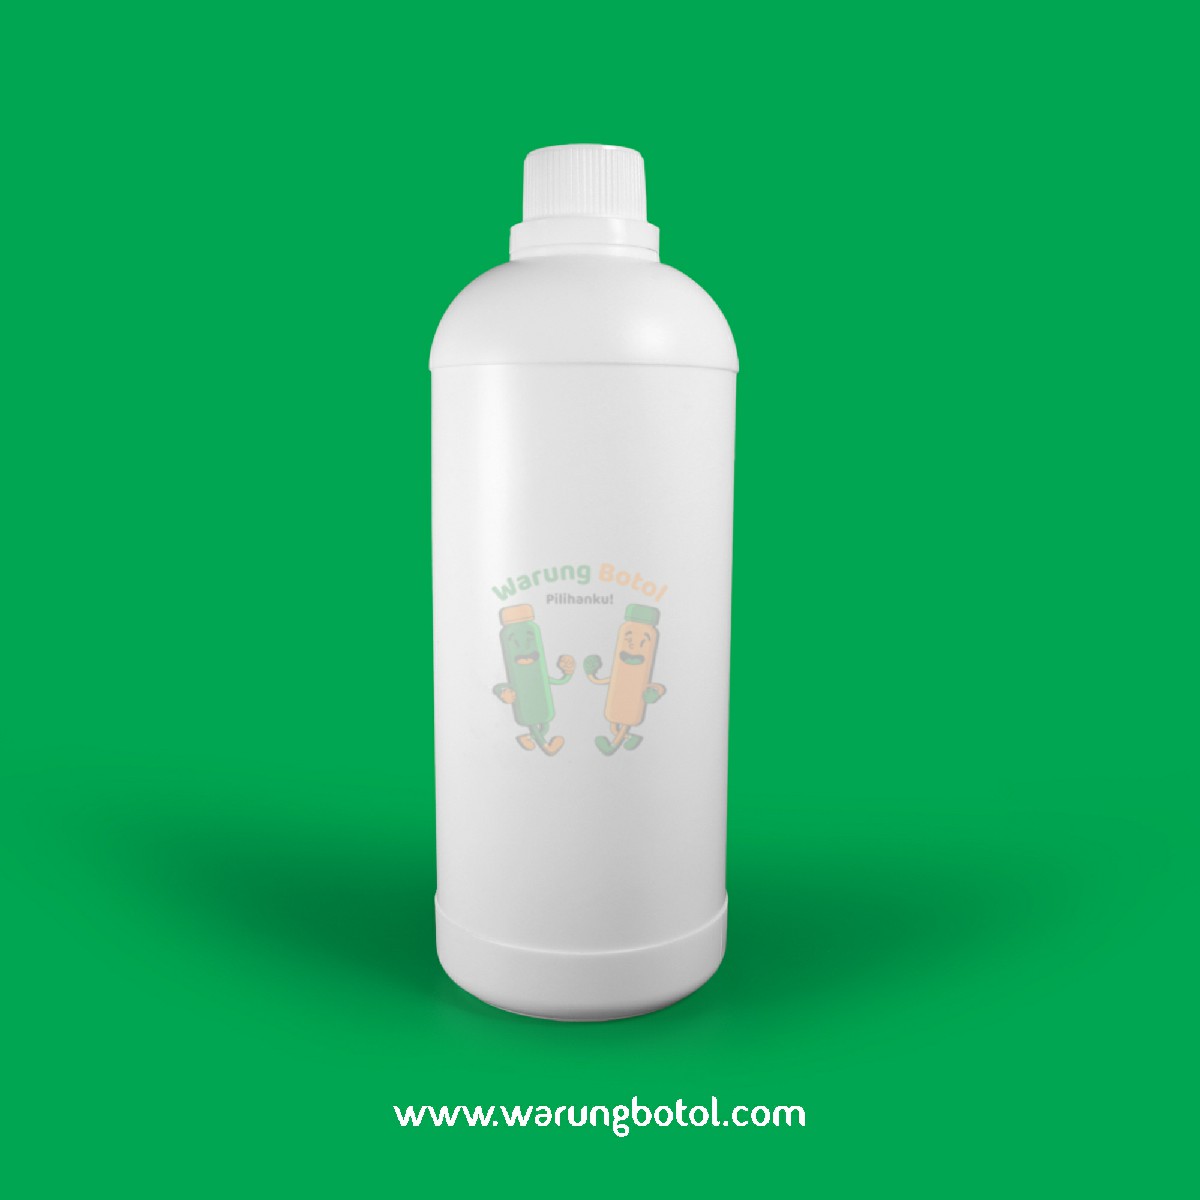 distributor toko jual botol plastik labor untuk bahan kimia 1000ml putih murah terdekat bandung jakarta bogor bekasi